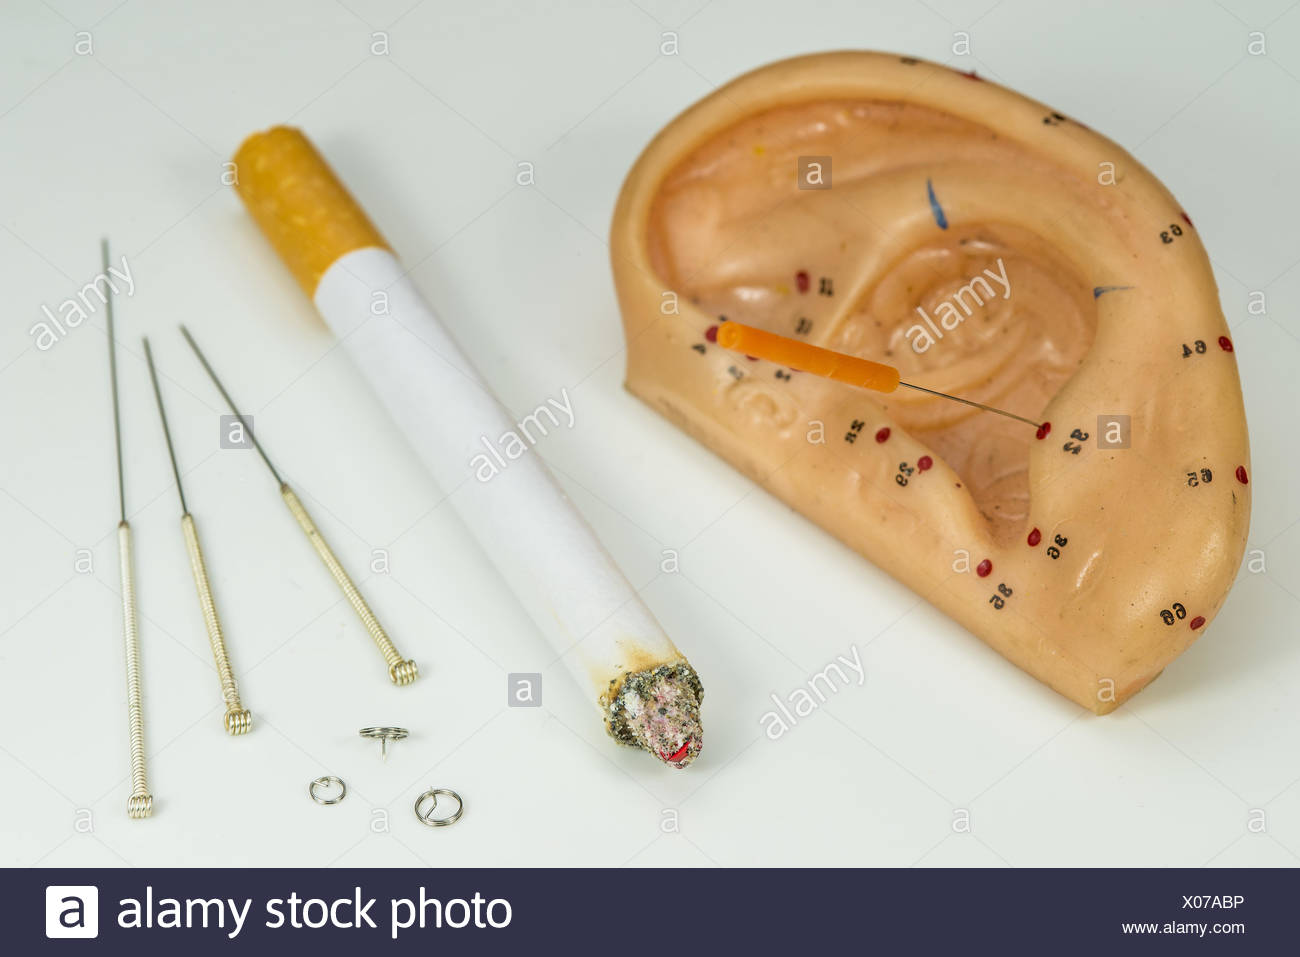 Akupunktur, mit dem Rauchen aufzuhören Stockfotografie - Alamy